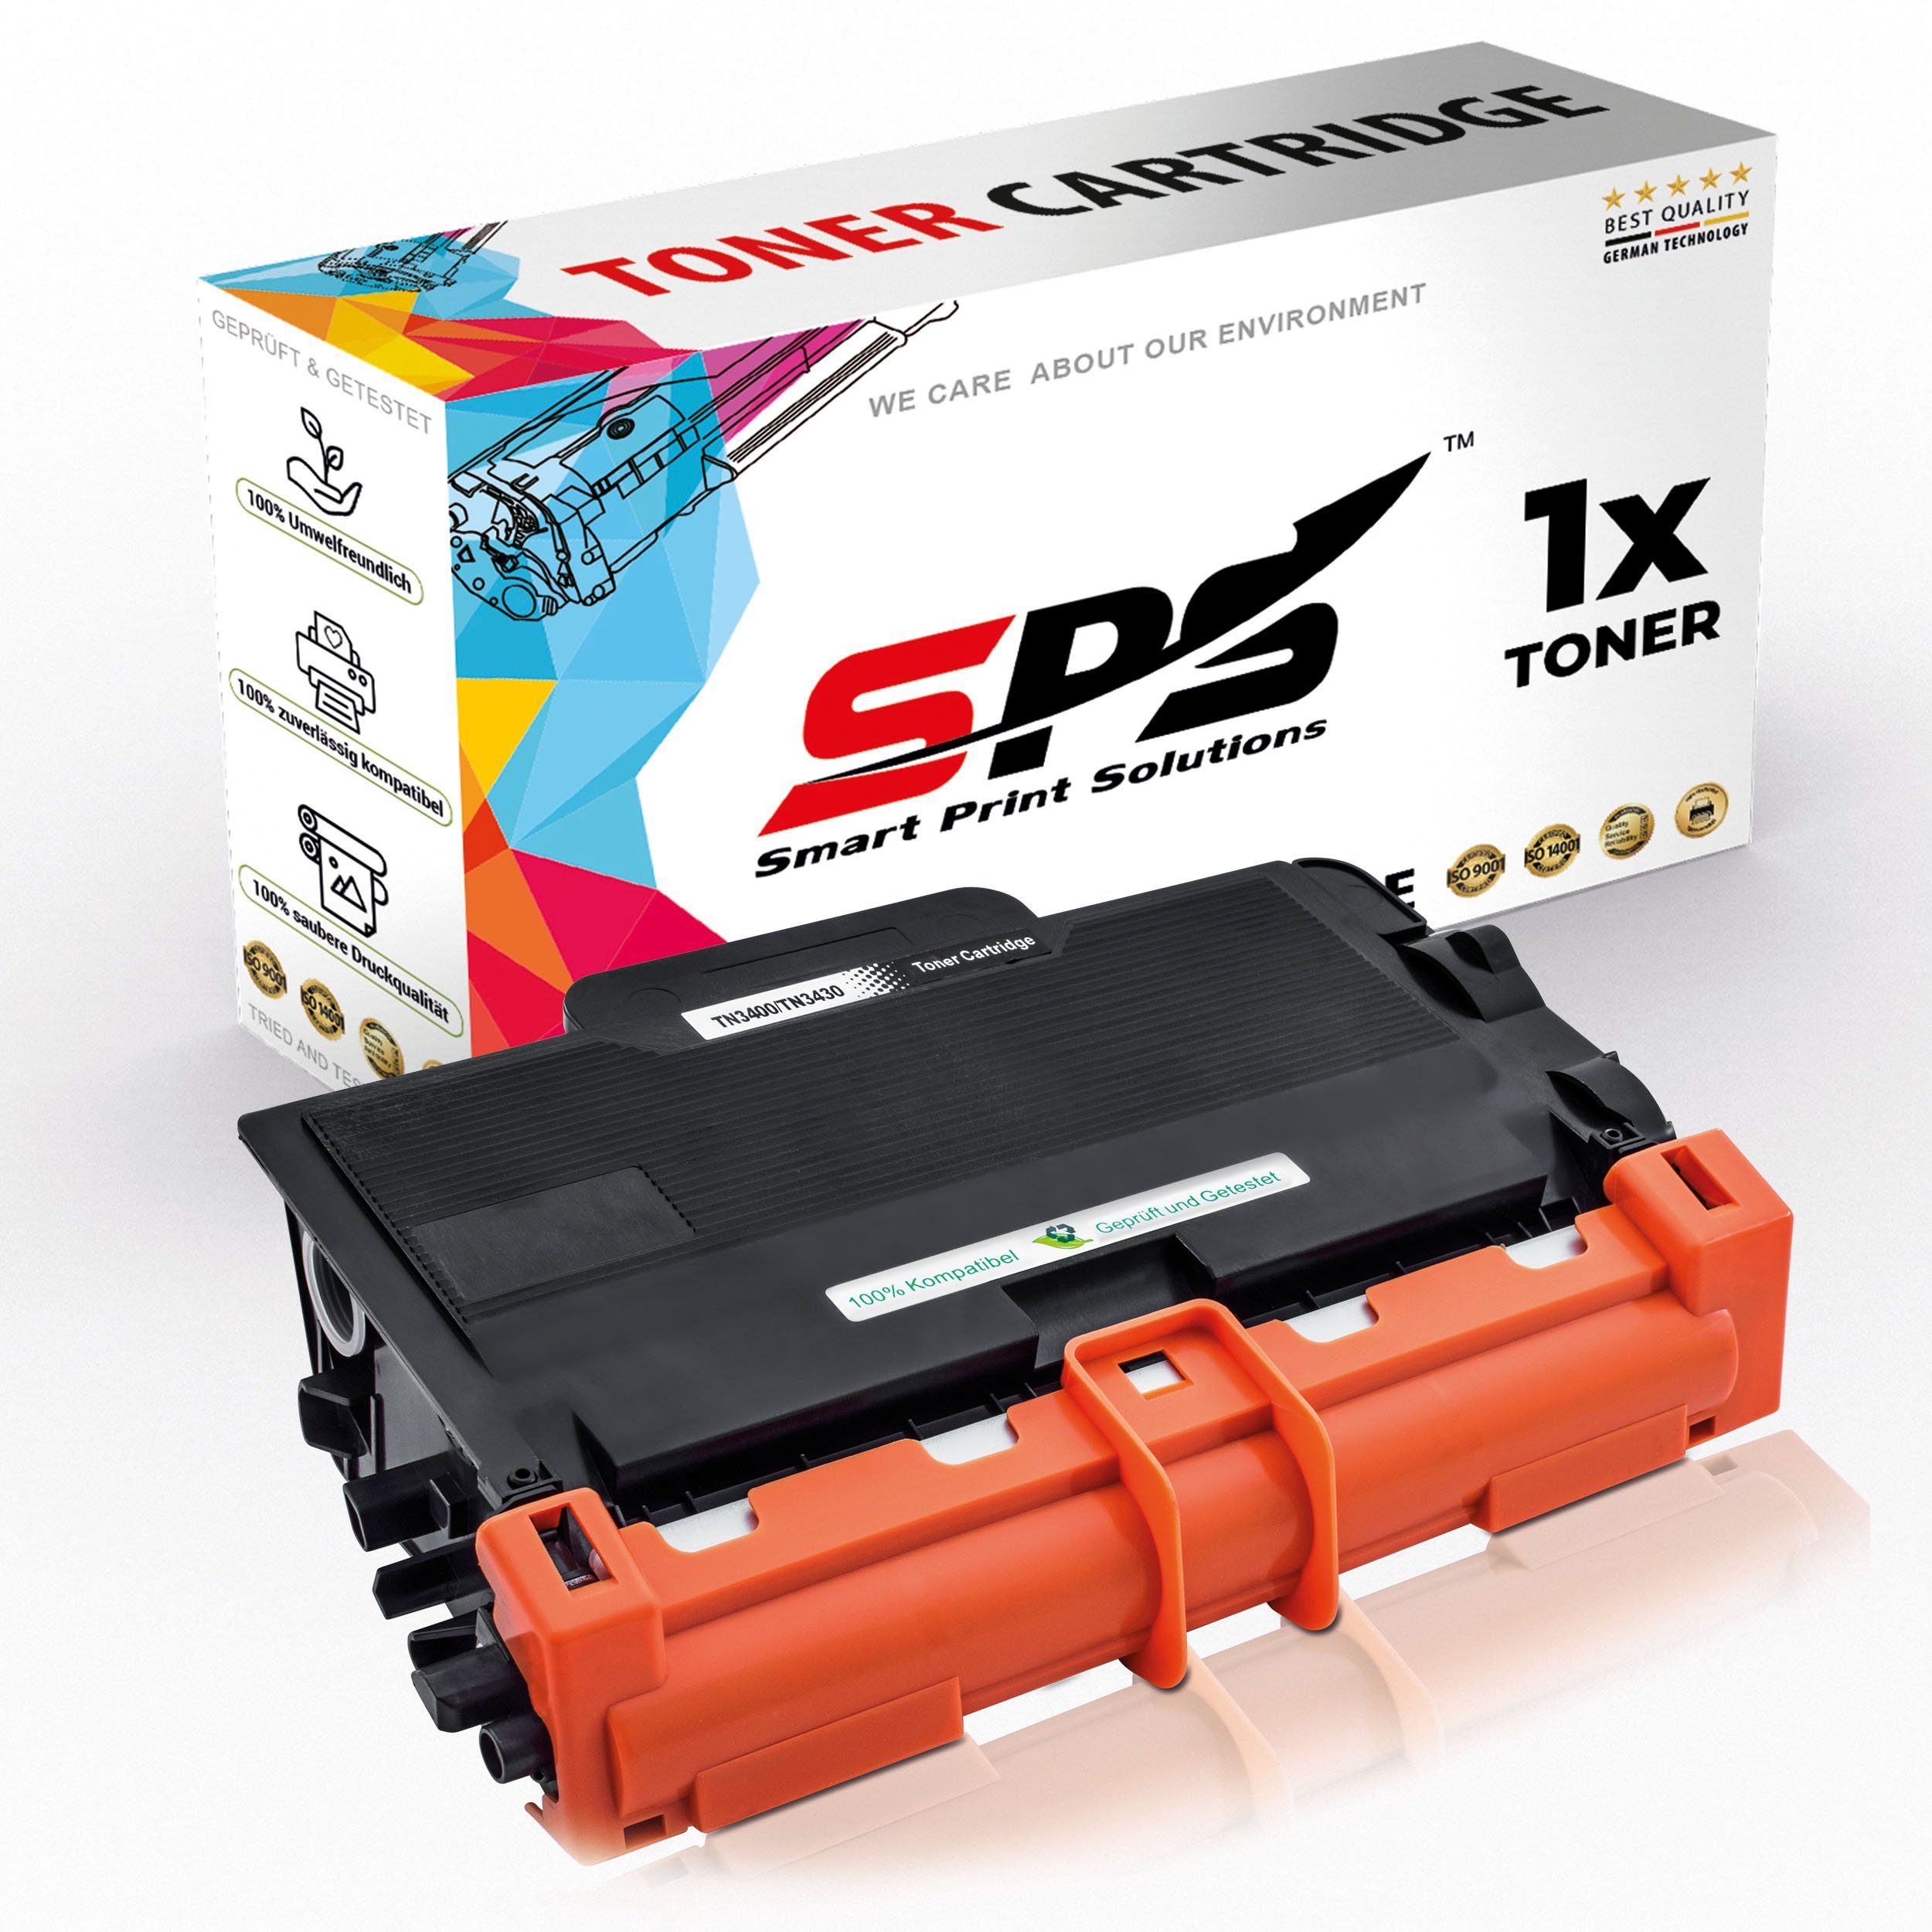 SPS Tonerkartusche Kompatibel für Brother HL-L5200 TN-3430, (1er Pack)